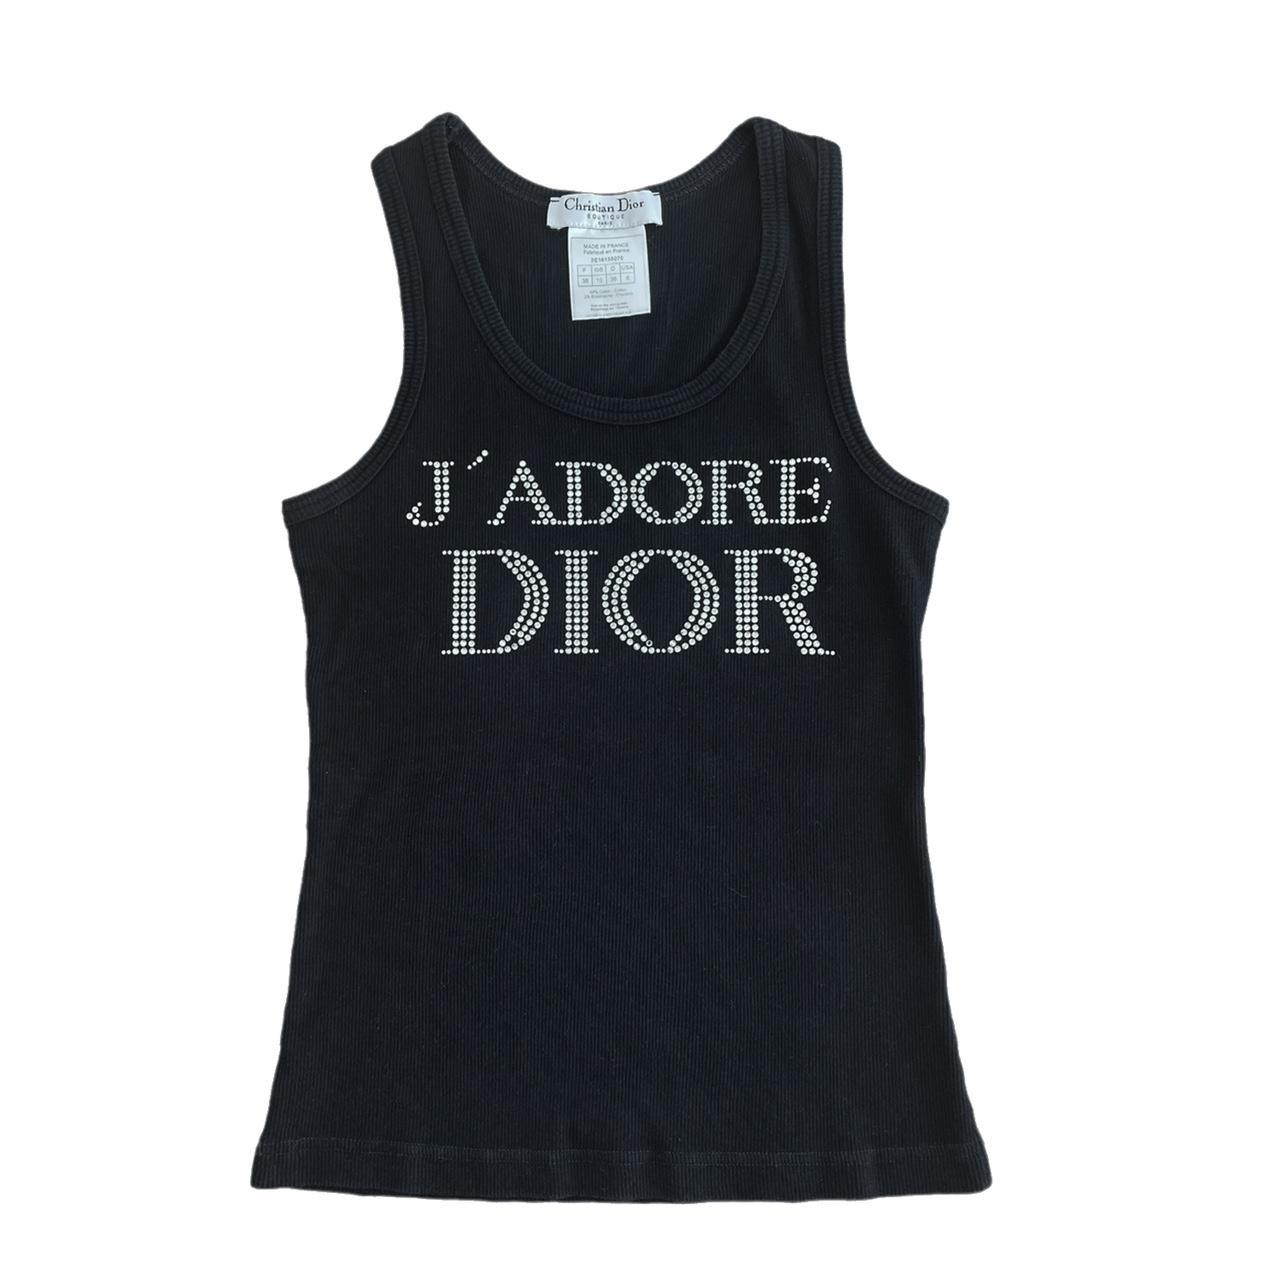 Dior Top - Authentic Dior Diamante Crystal Vest Tank... - Depop